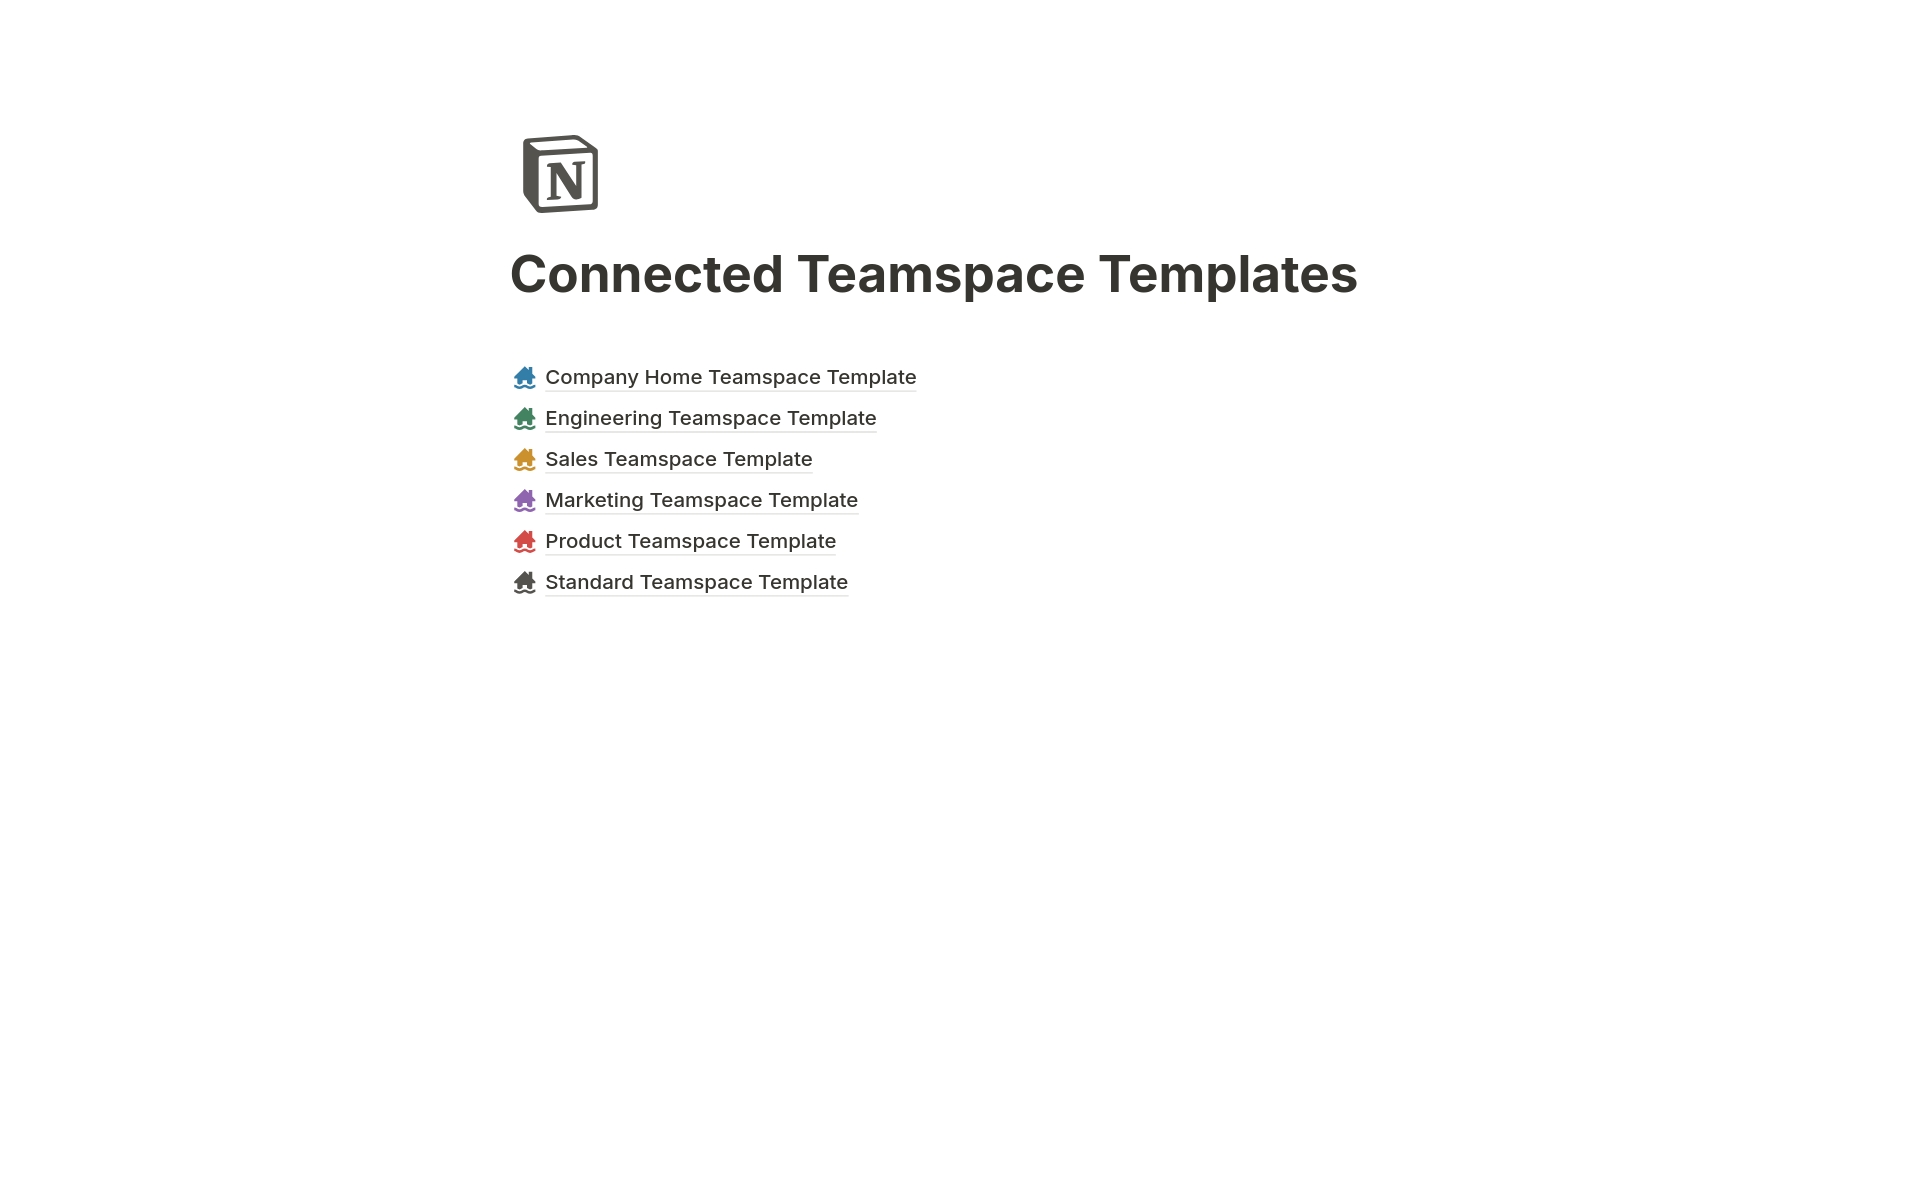 Vista previa de plantilla para Connected Teamspaces